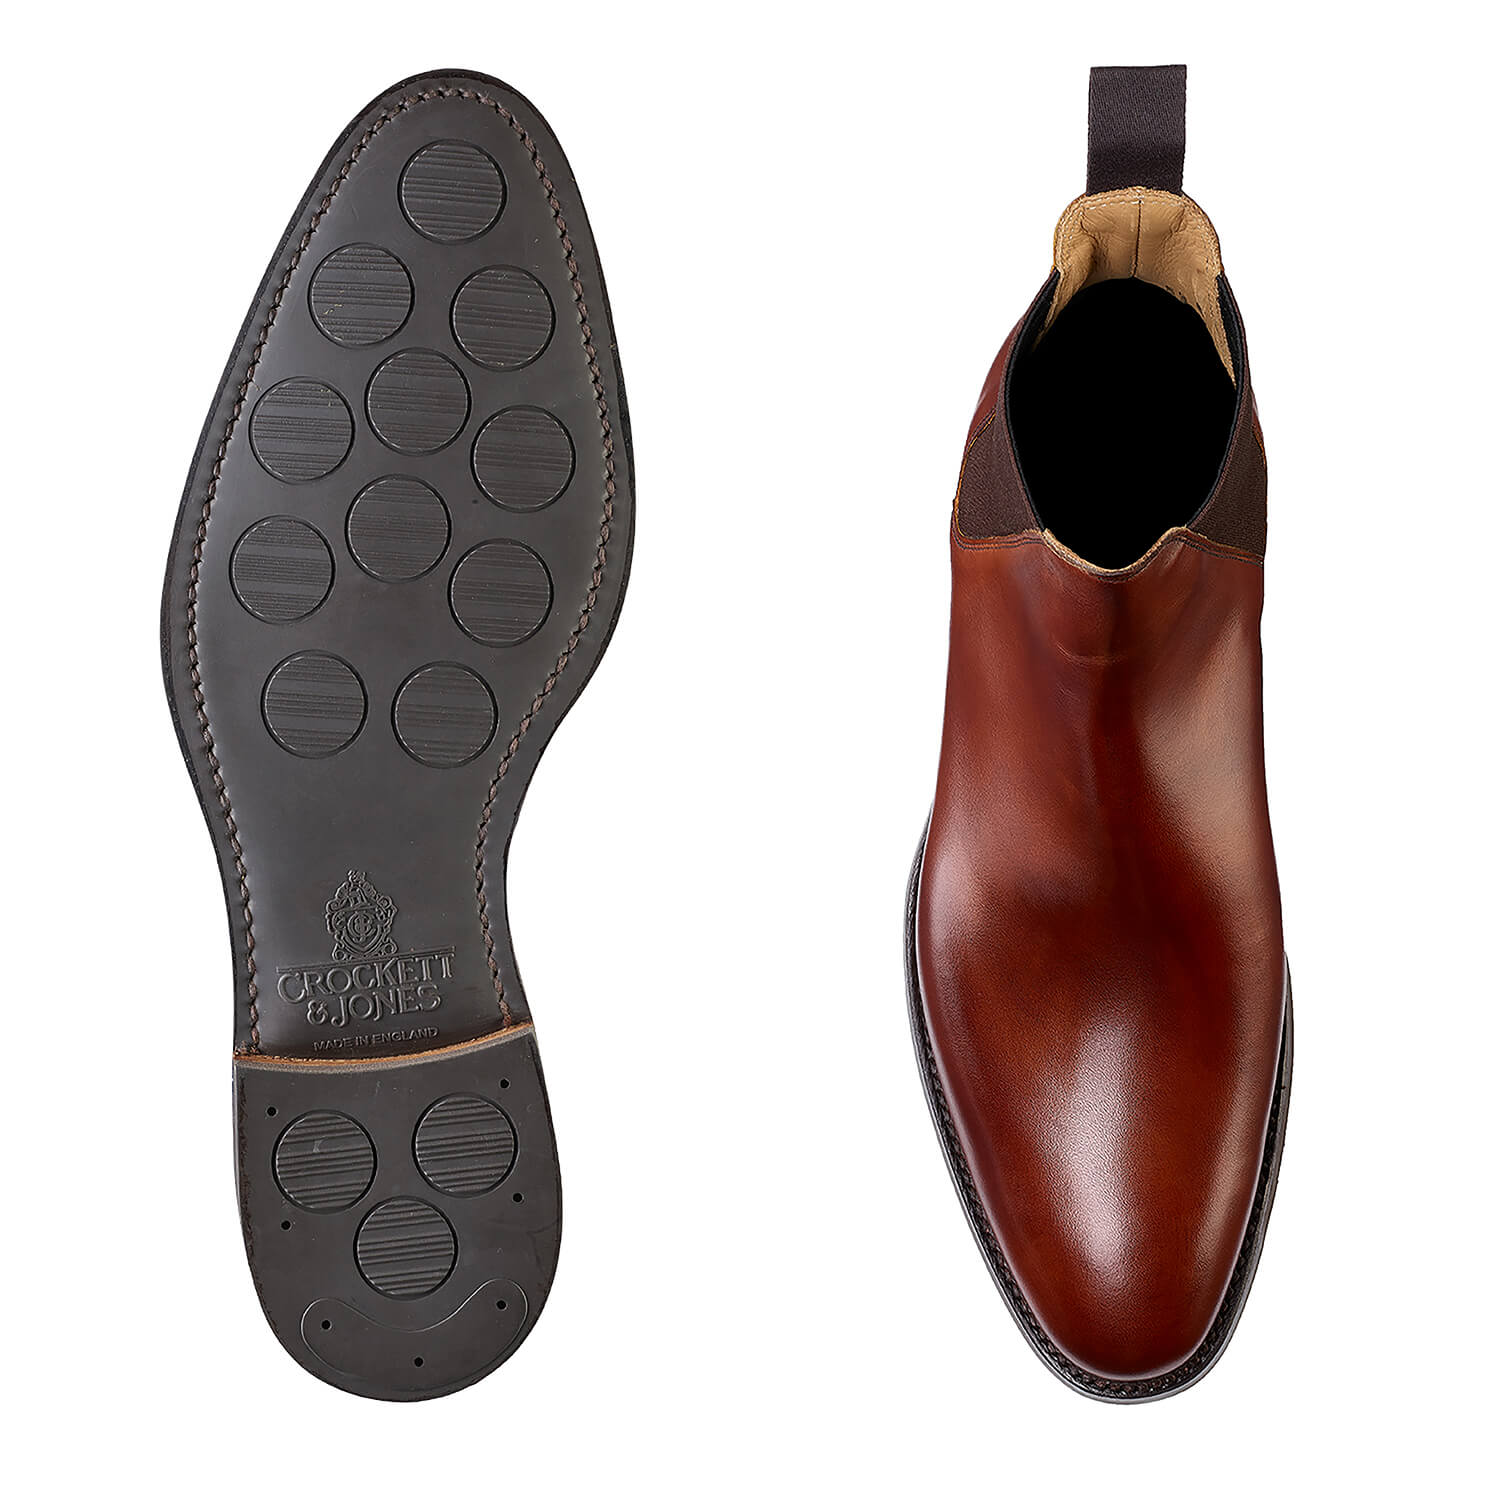 Chelsea 8, chestnut calf chelsea boot made in leather, branded Crockett & Jones